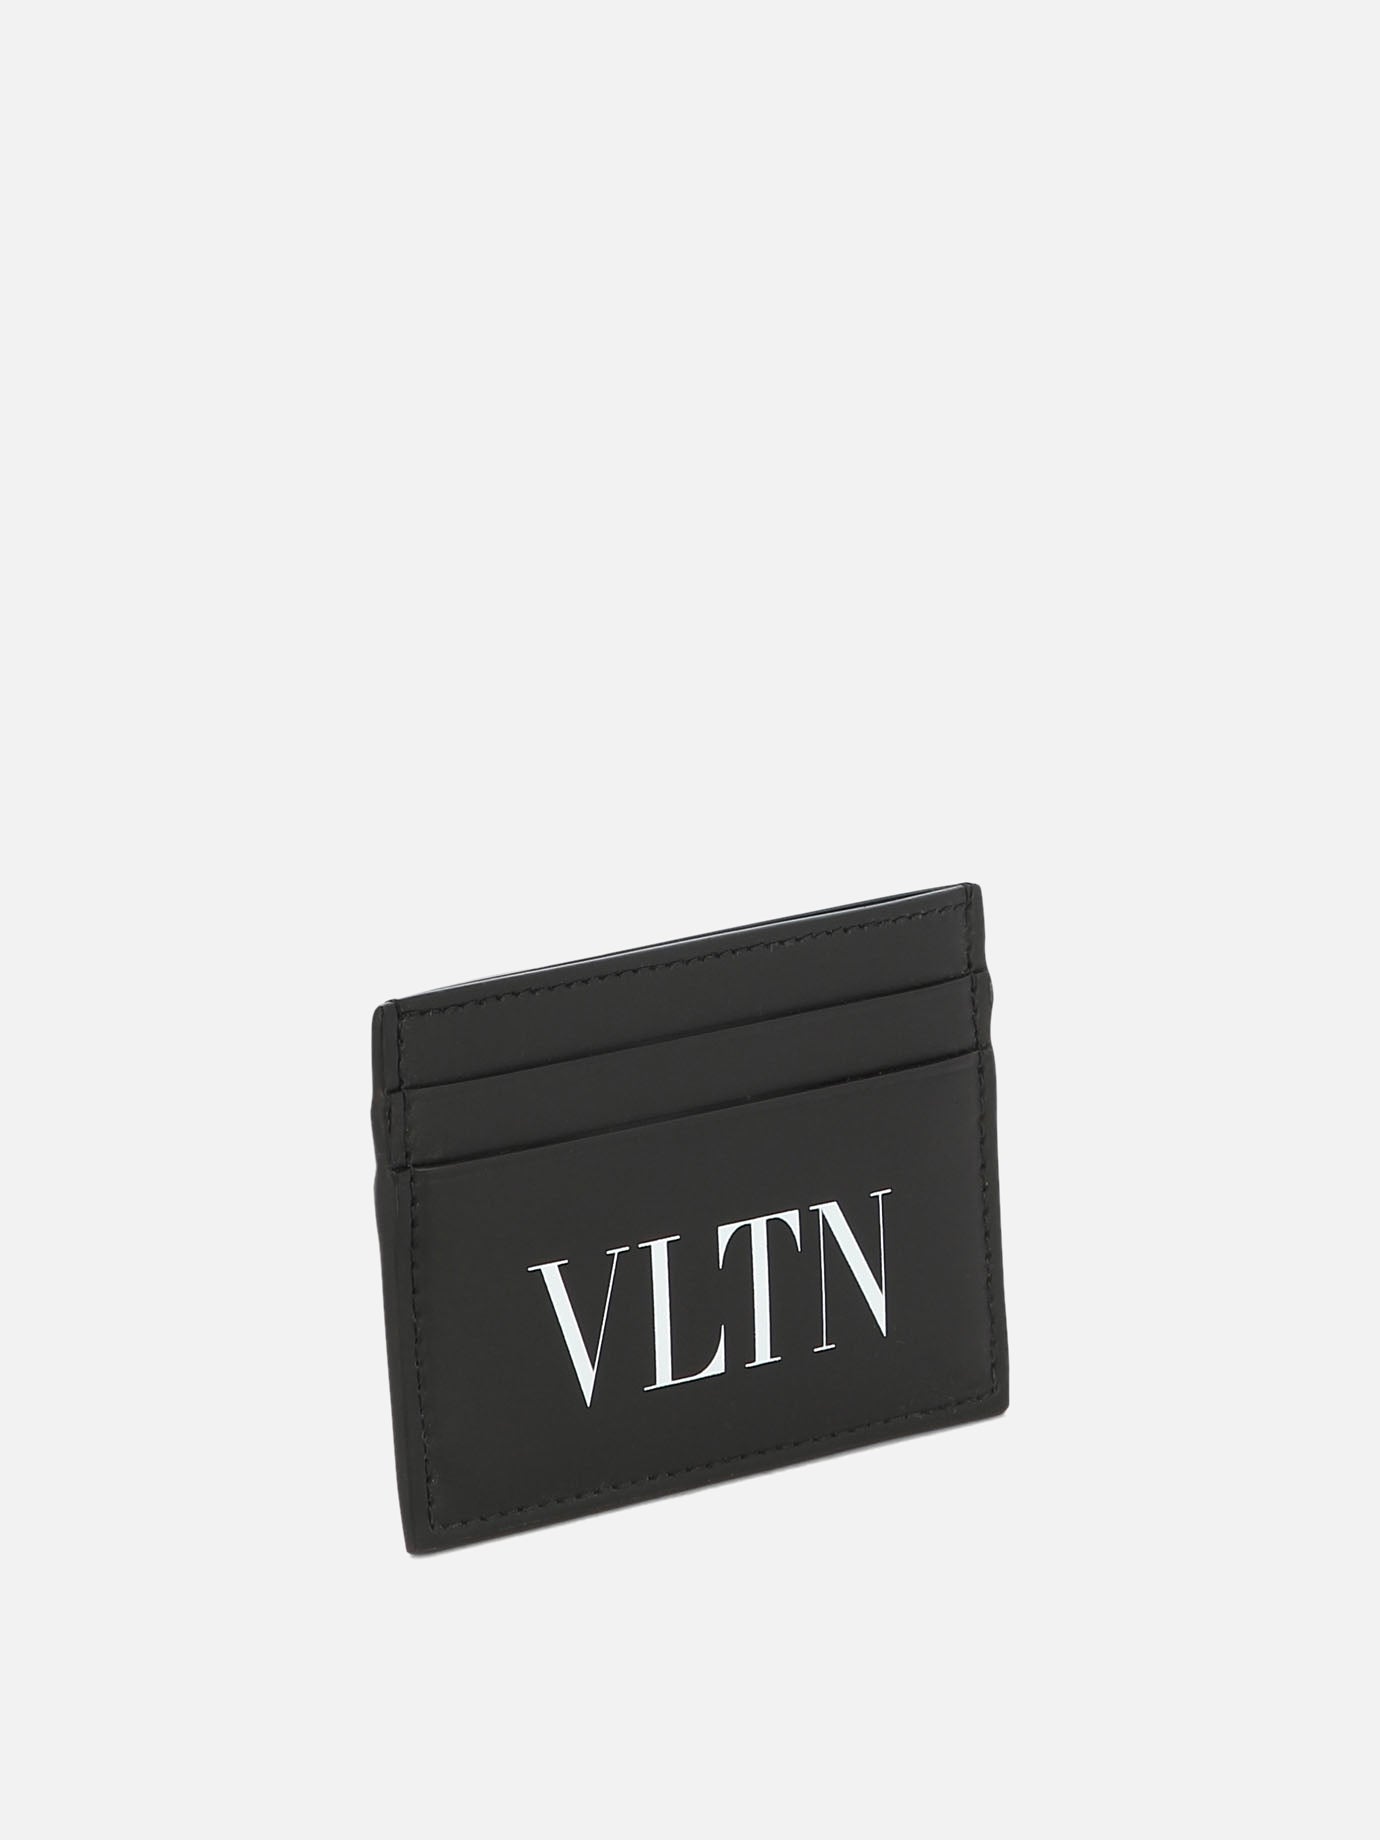 "VLTN" card holder